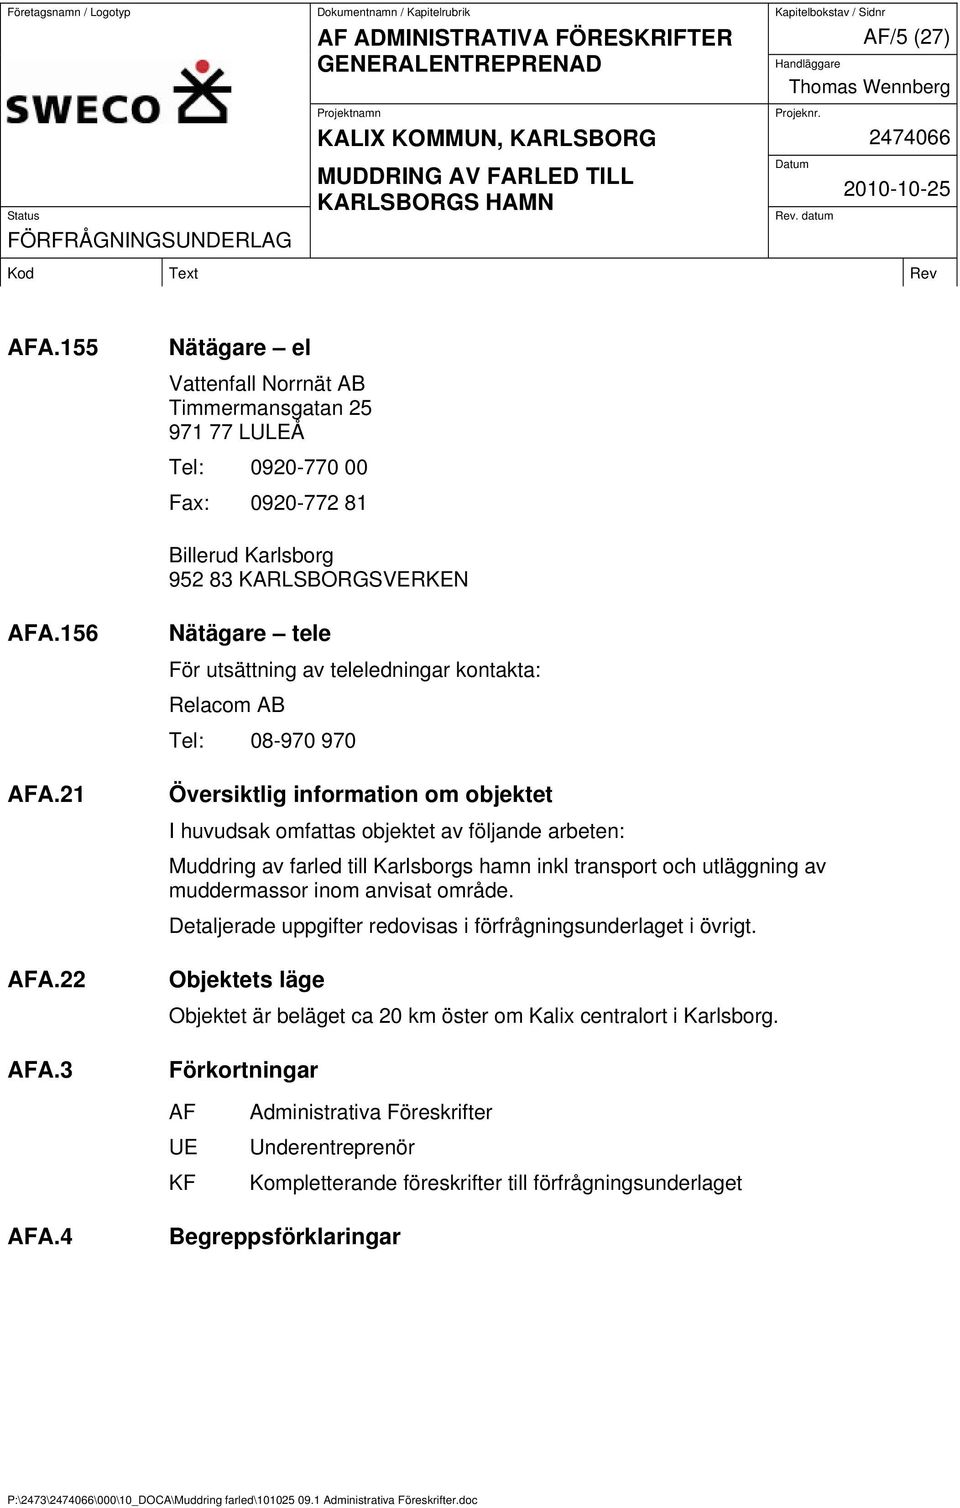 till Karlsborgs hamn inkl transport och utläggning av muddermassor inom anvisat område. Detaljerade uppgifter redovisas i förfrågningsunderlaget i övrigt.